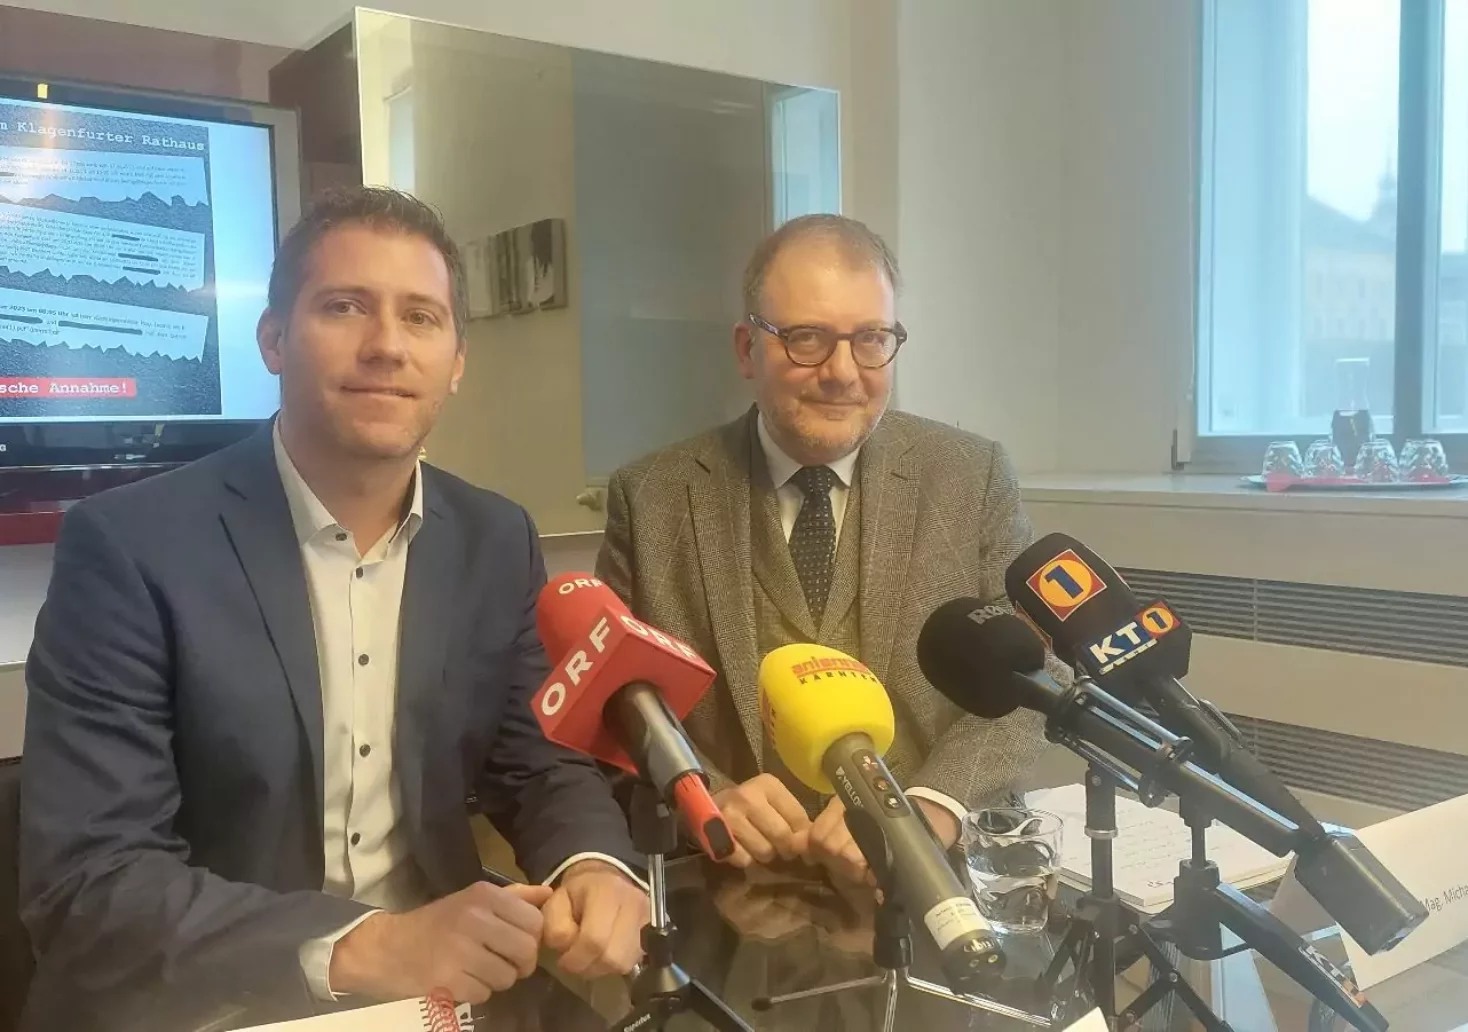 Bild auf 5min.at zeigt den Klagenfurter Vizebürgermeister Liesnig und den Rechtsanwalt Pilz bei einer Pressekonferenz.